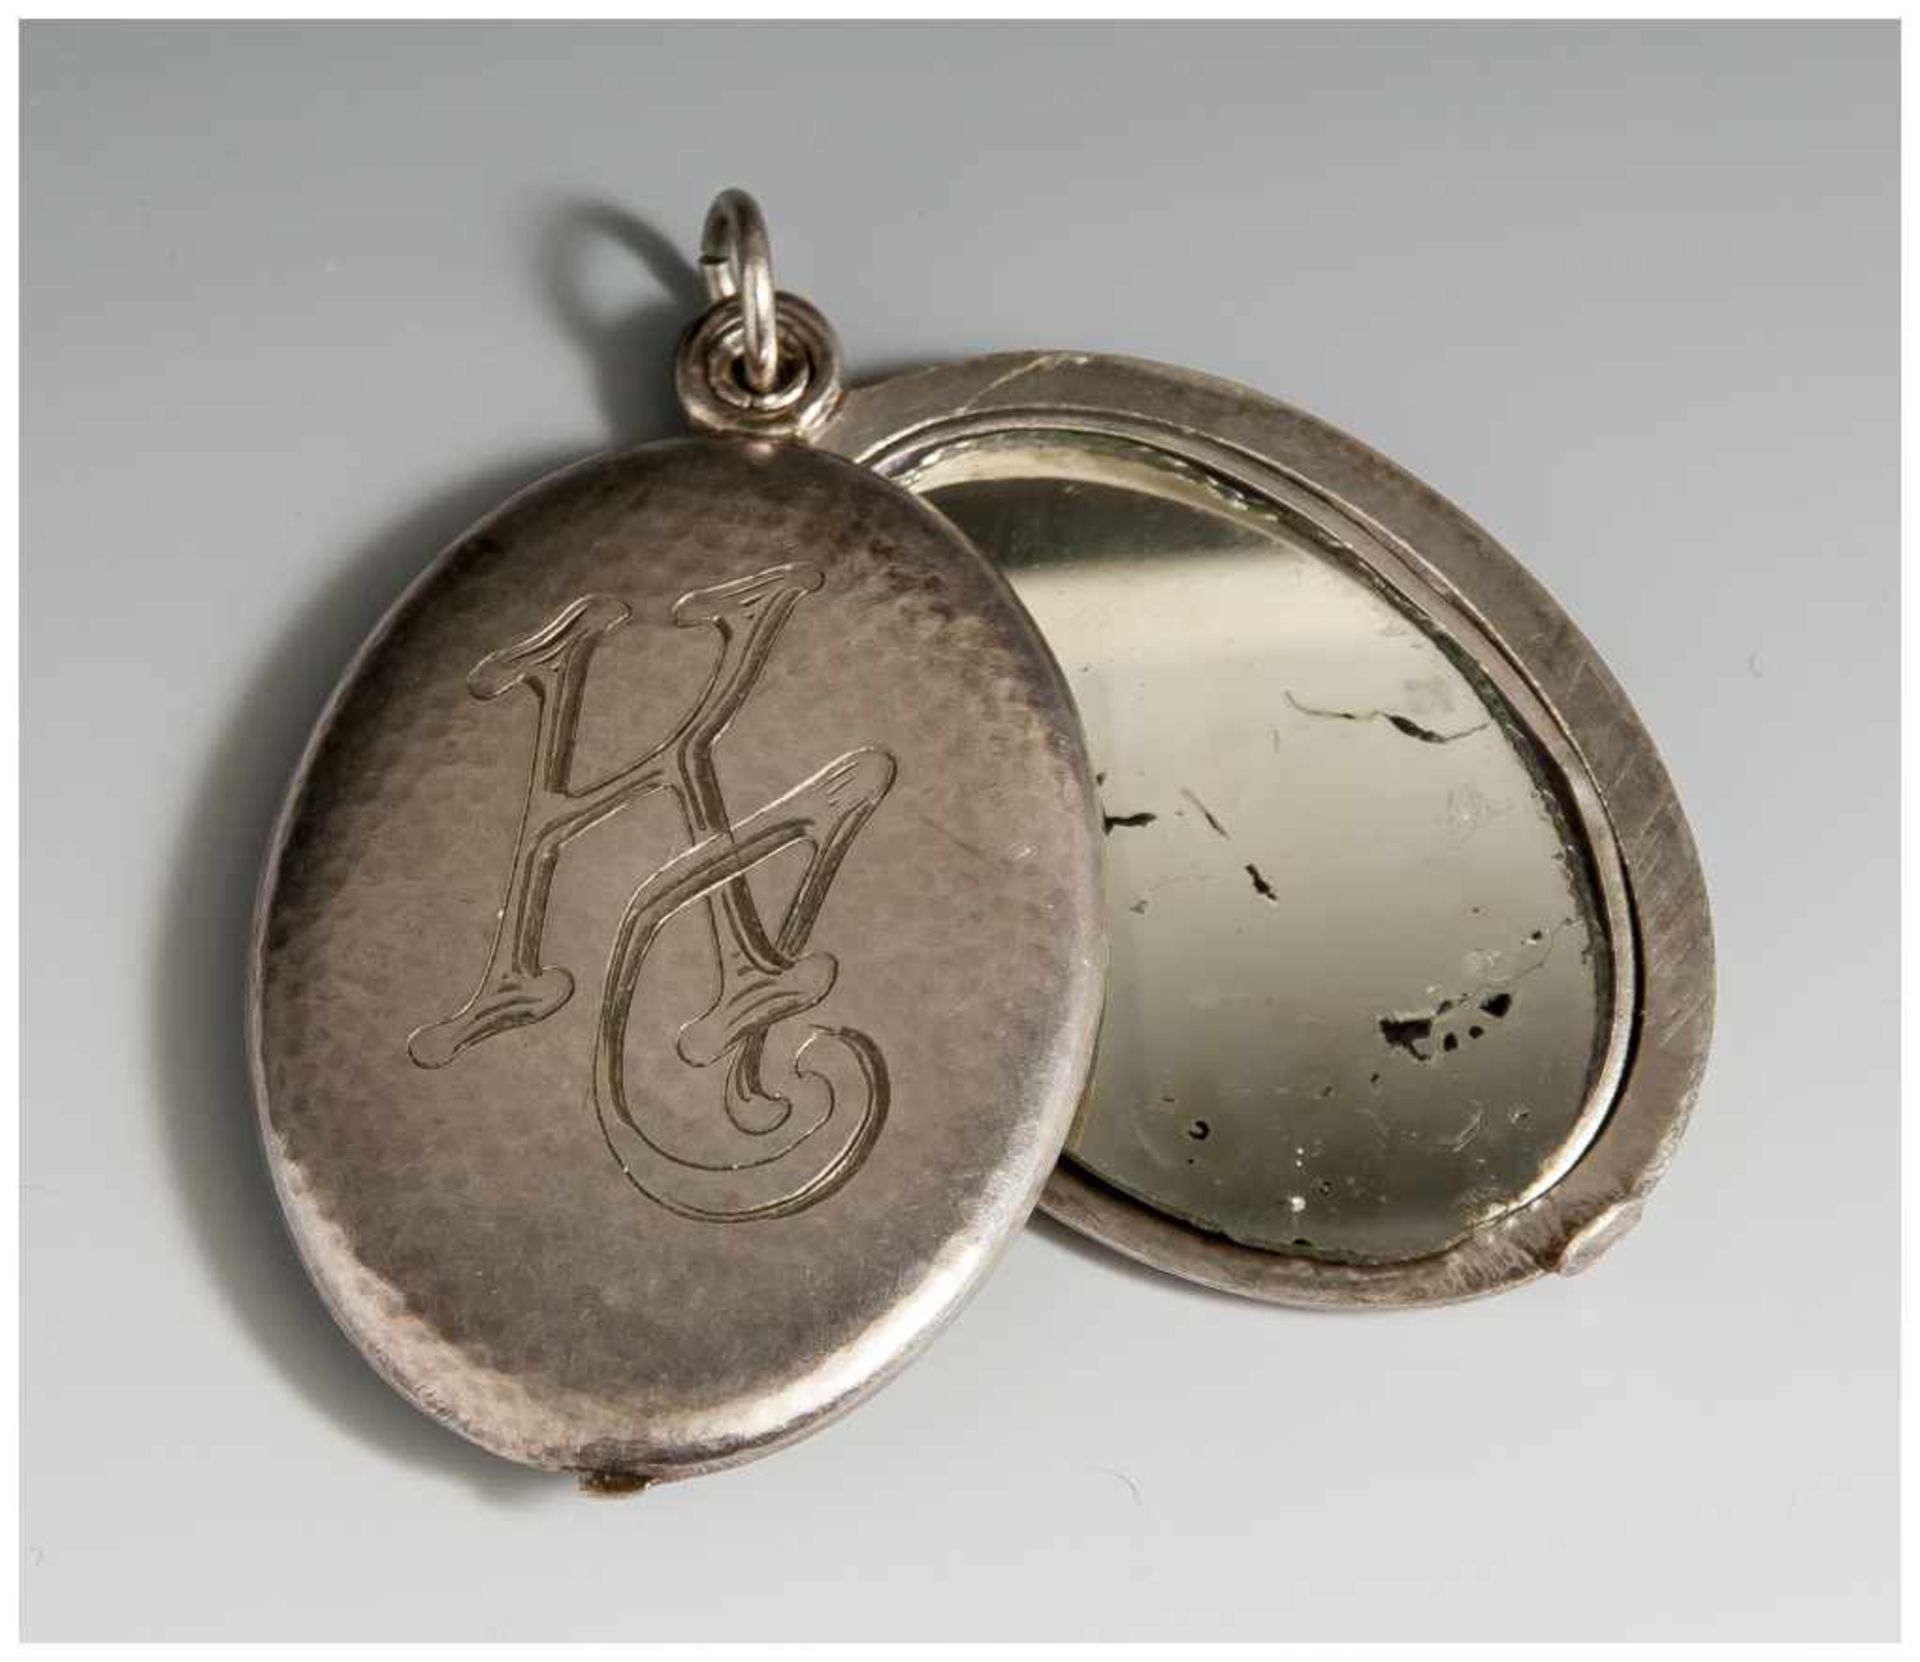 Medaillonanhänger, 1920/30er Jahre, Silber, ovale Form, leichter Hammerschlagdekor, mit graviertem